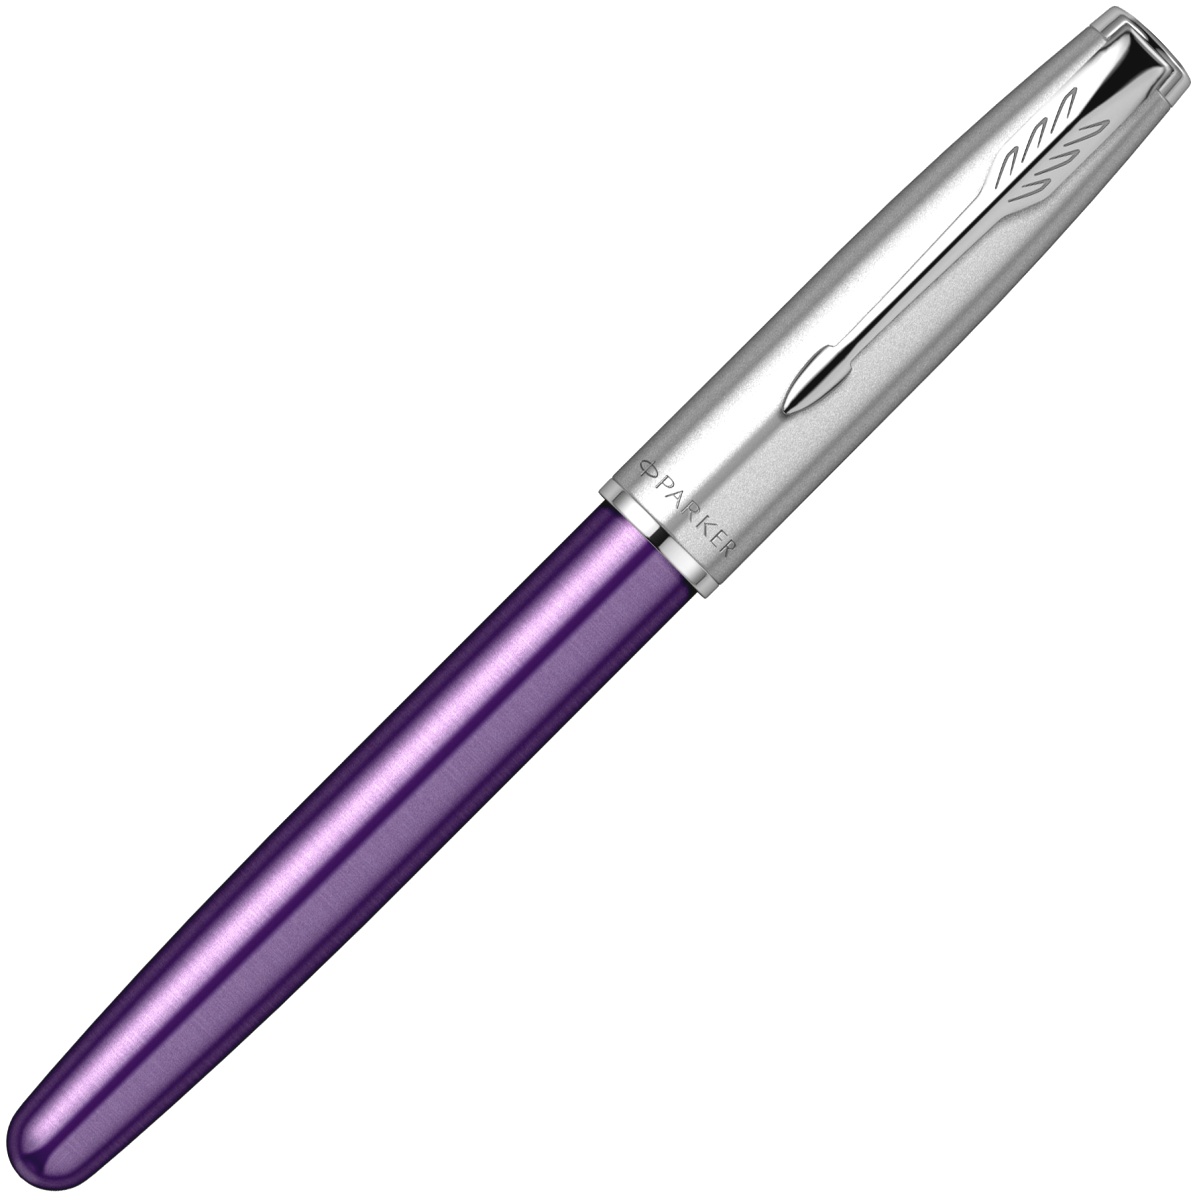  Ручка перьевая Parker Sonnet Essential SB F545, Violet CT (Перо F), фото 4